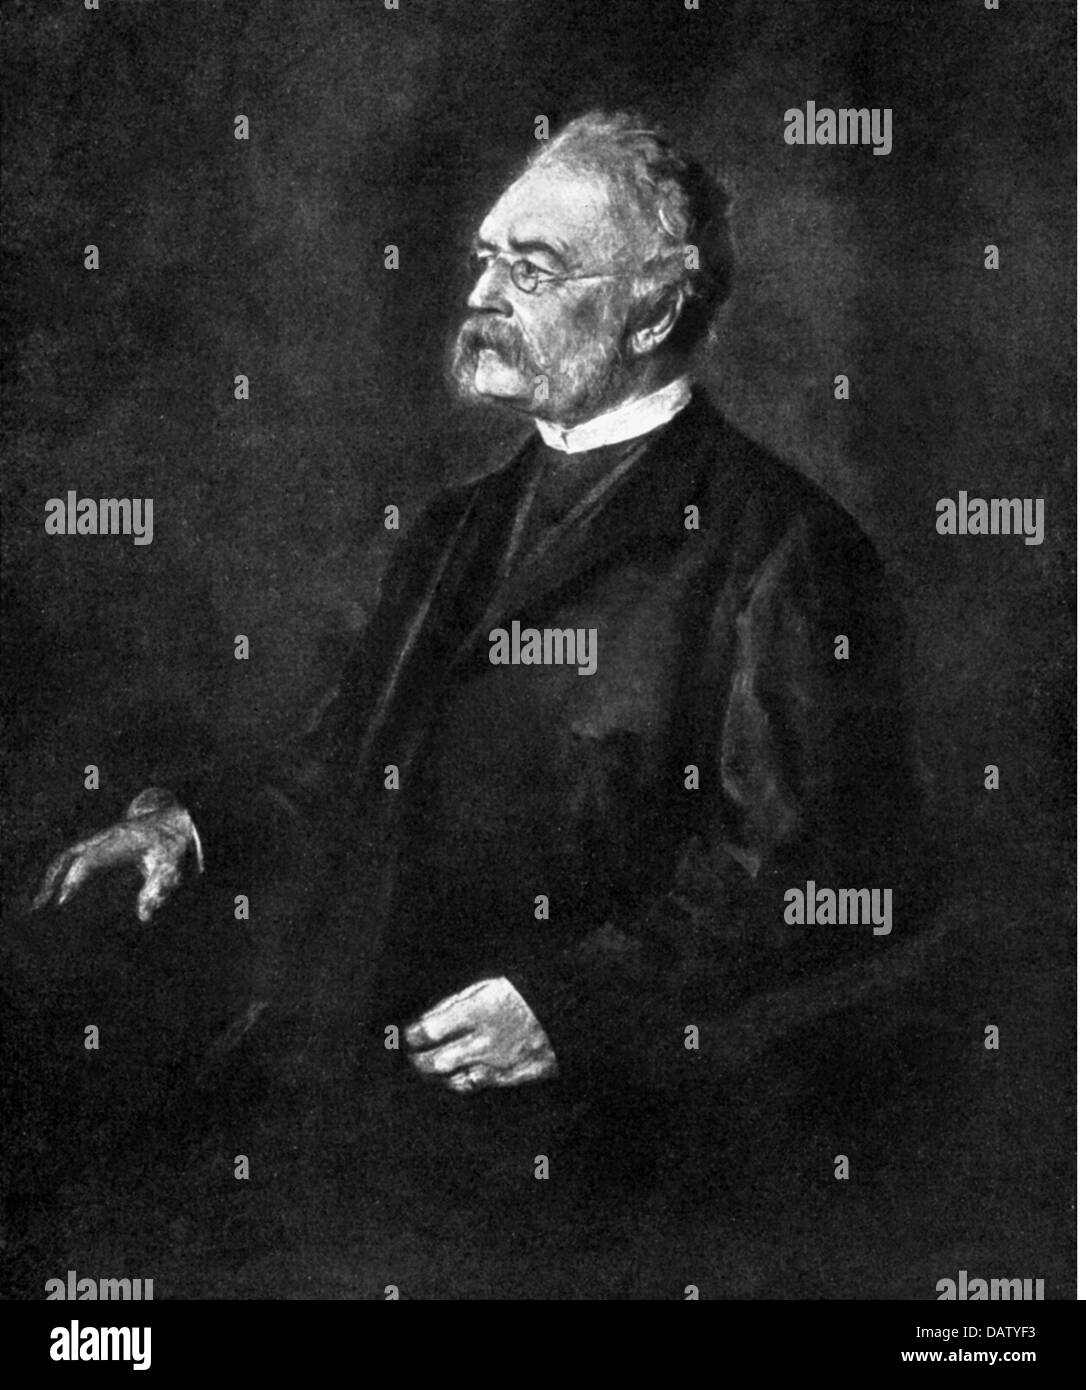 Werner von Siemens, 13.3.1816 - 6.12.1892, empresario e inventor alemán, de longitud media, basada en una pintura del siglo XIX. Foto de stock